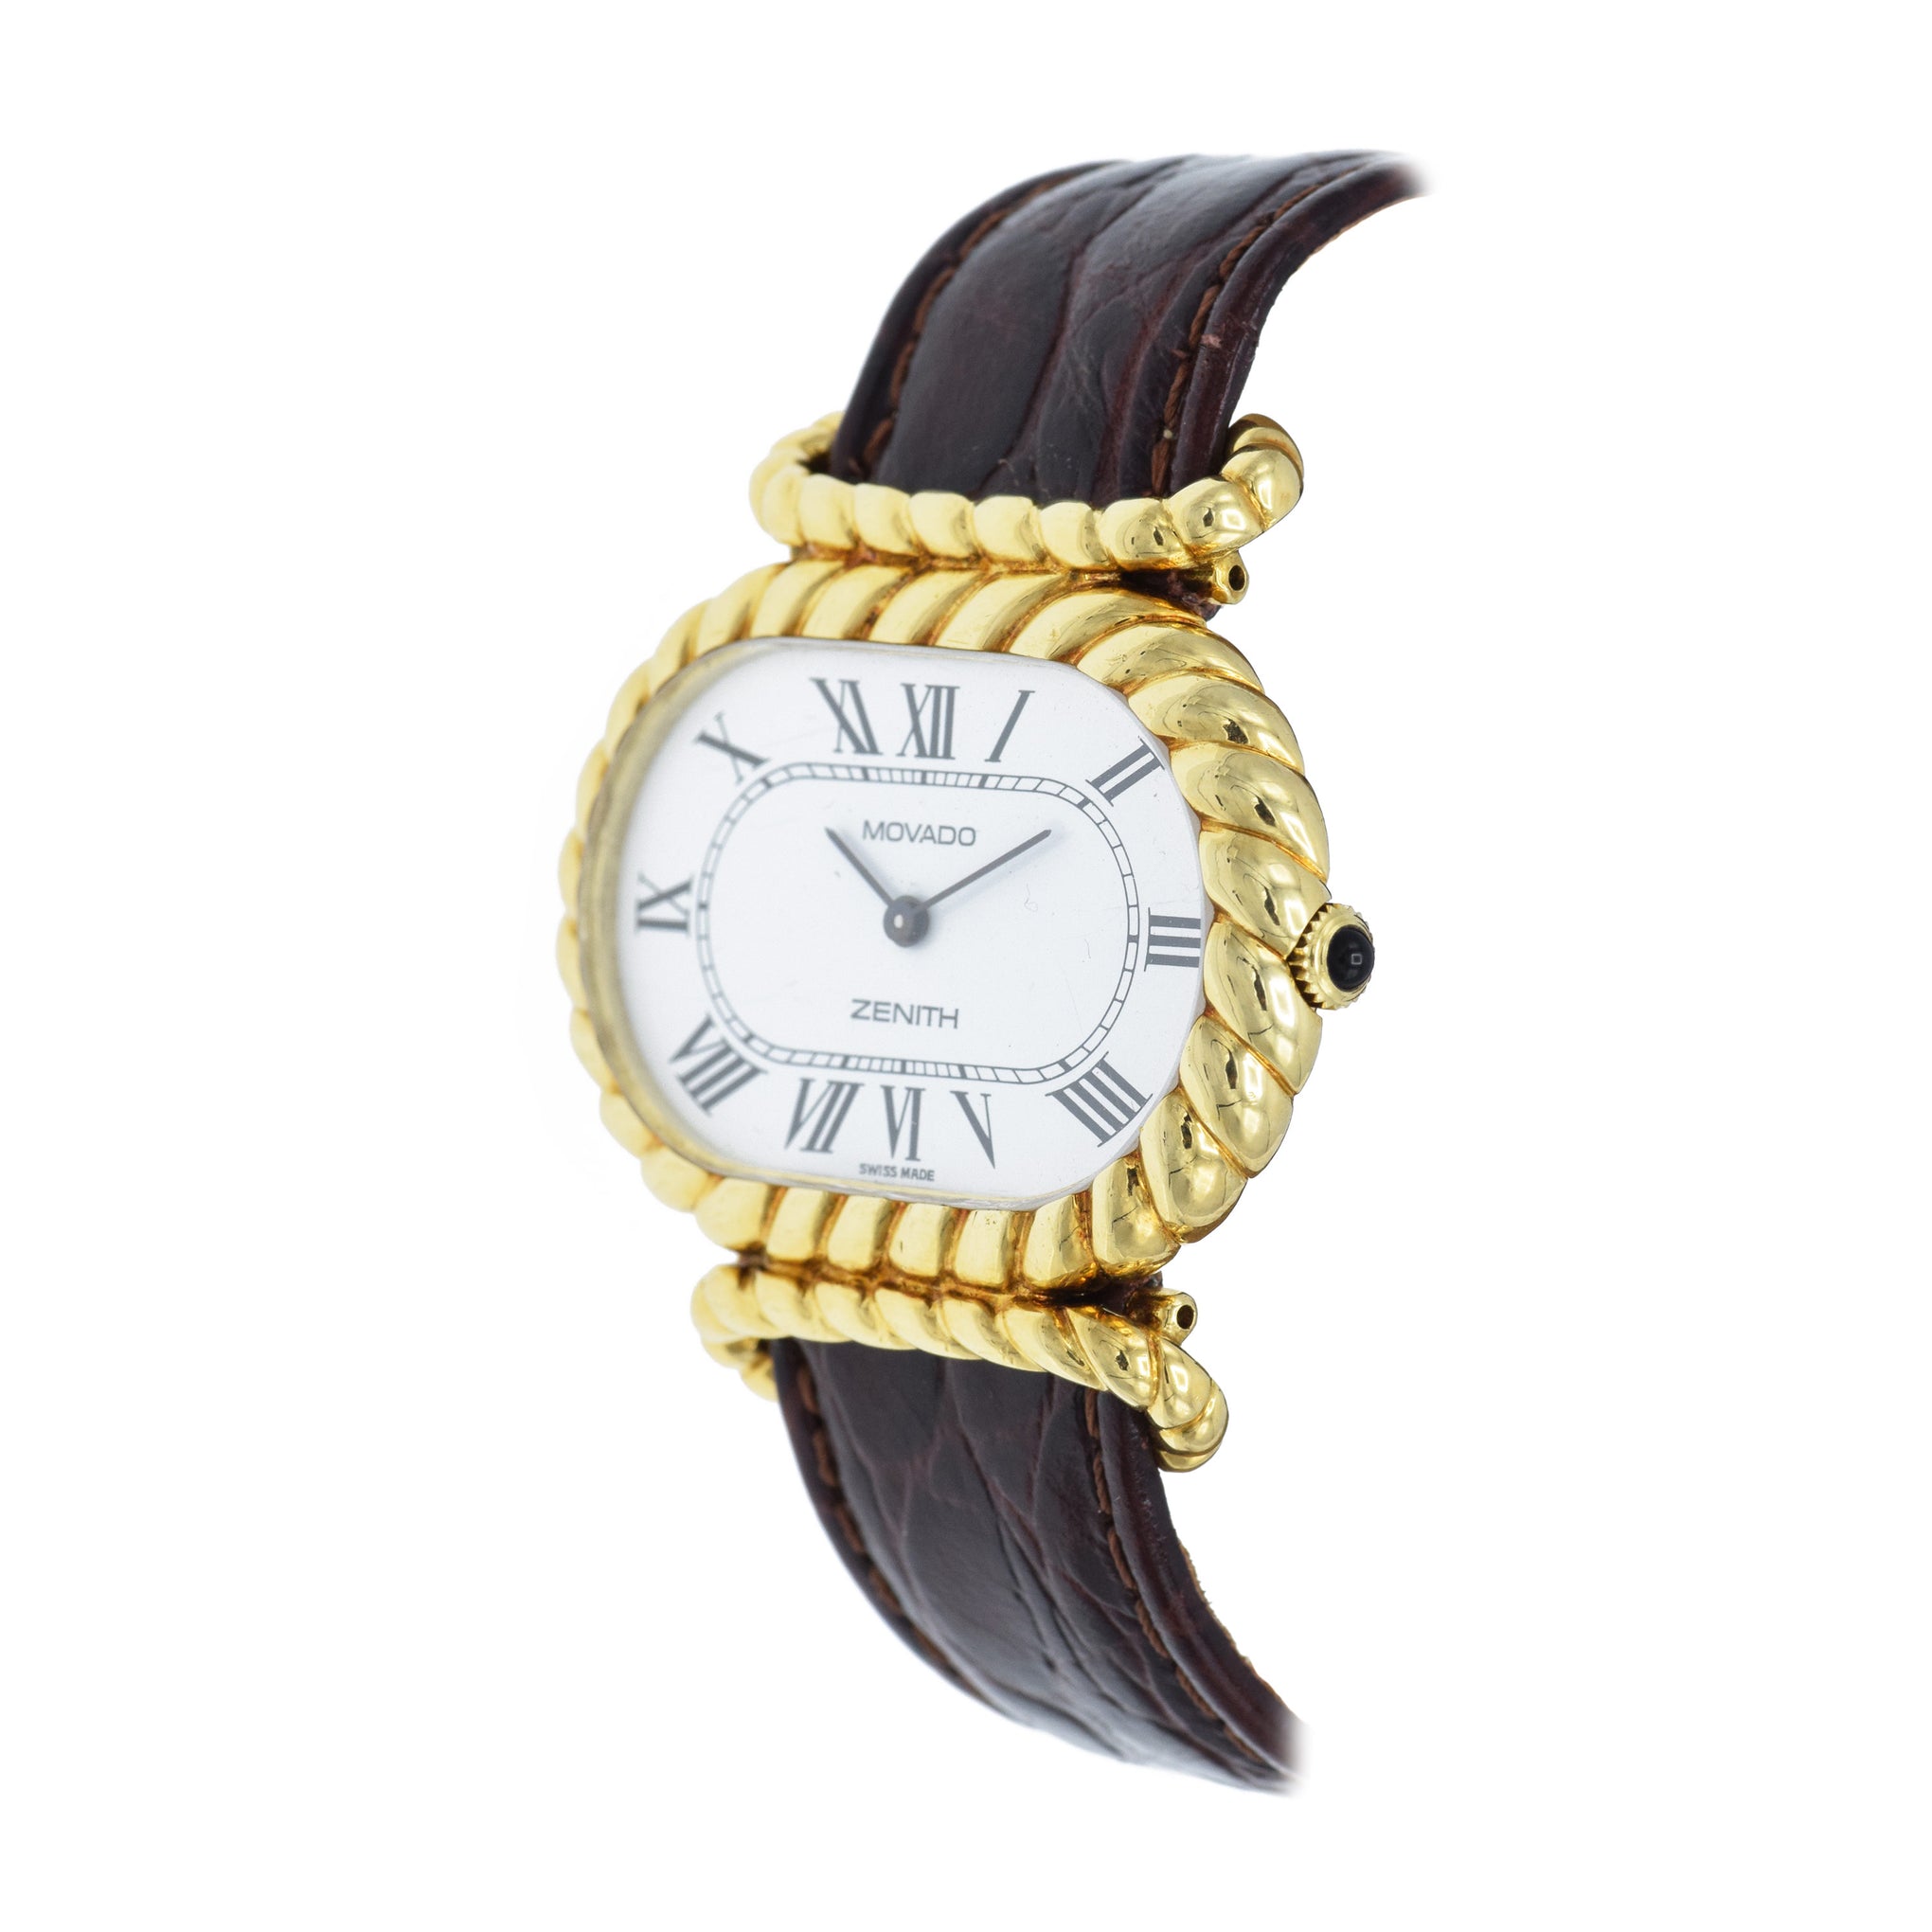 Vintage Movado Zenith Watch